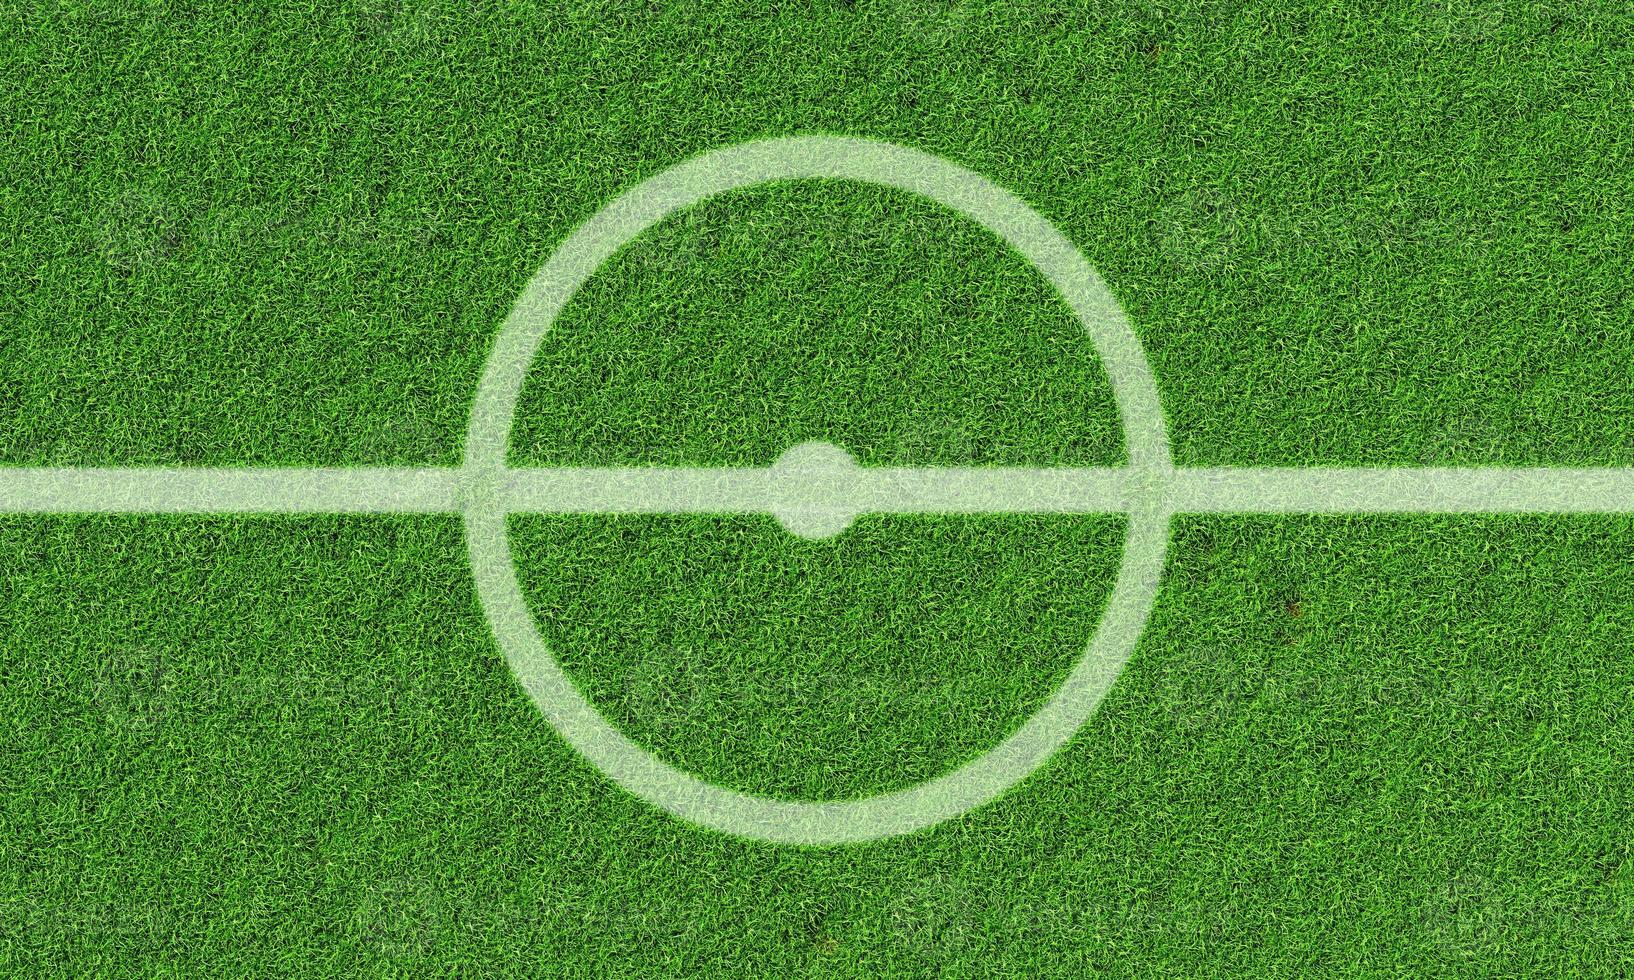 centro do fundo do campo de futebol. jogo de esporte e conceito atlético. renderização de ilustração 3D foto